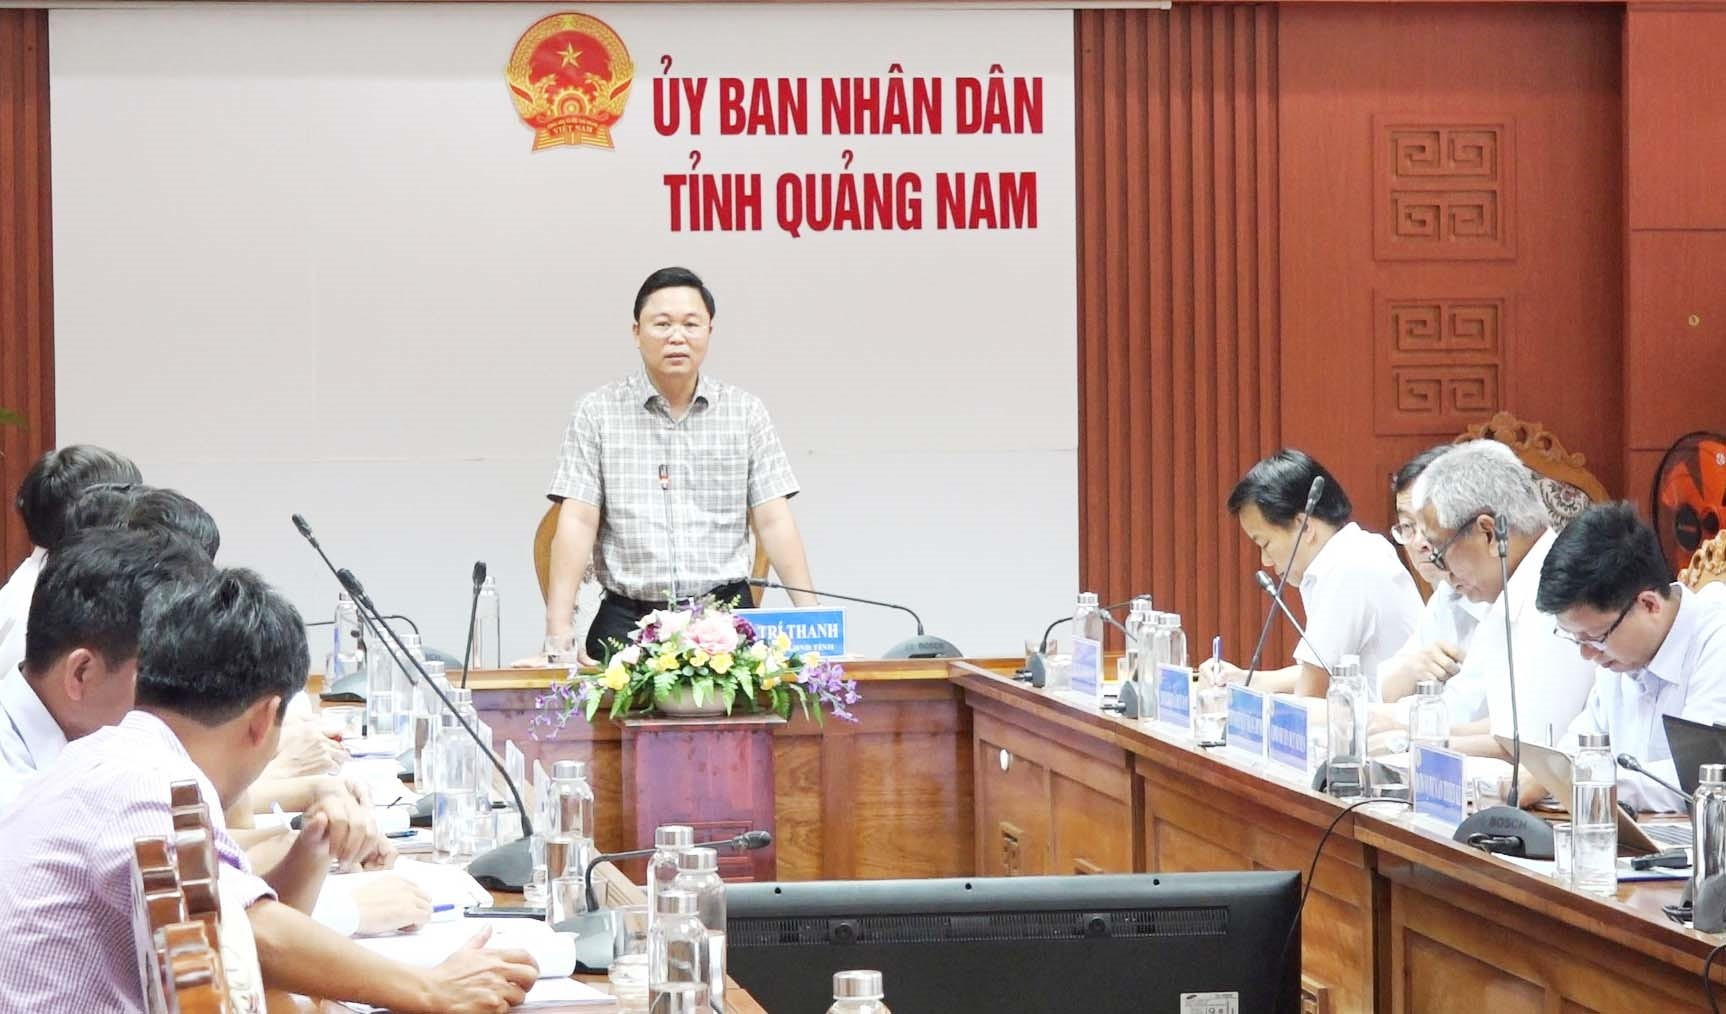 Chủ tịch UBND tỉnh Lê Trí Thanh yêu cầu các sở, ban ngành cần tính toán nhiều phương án để dự án đạt hiệu quả cao.Ảnh: P.V